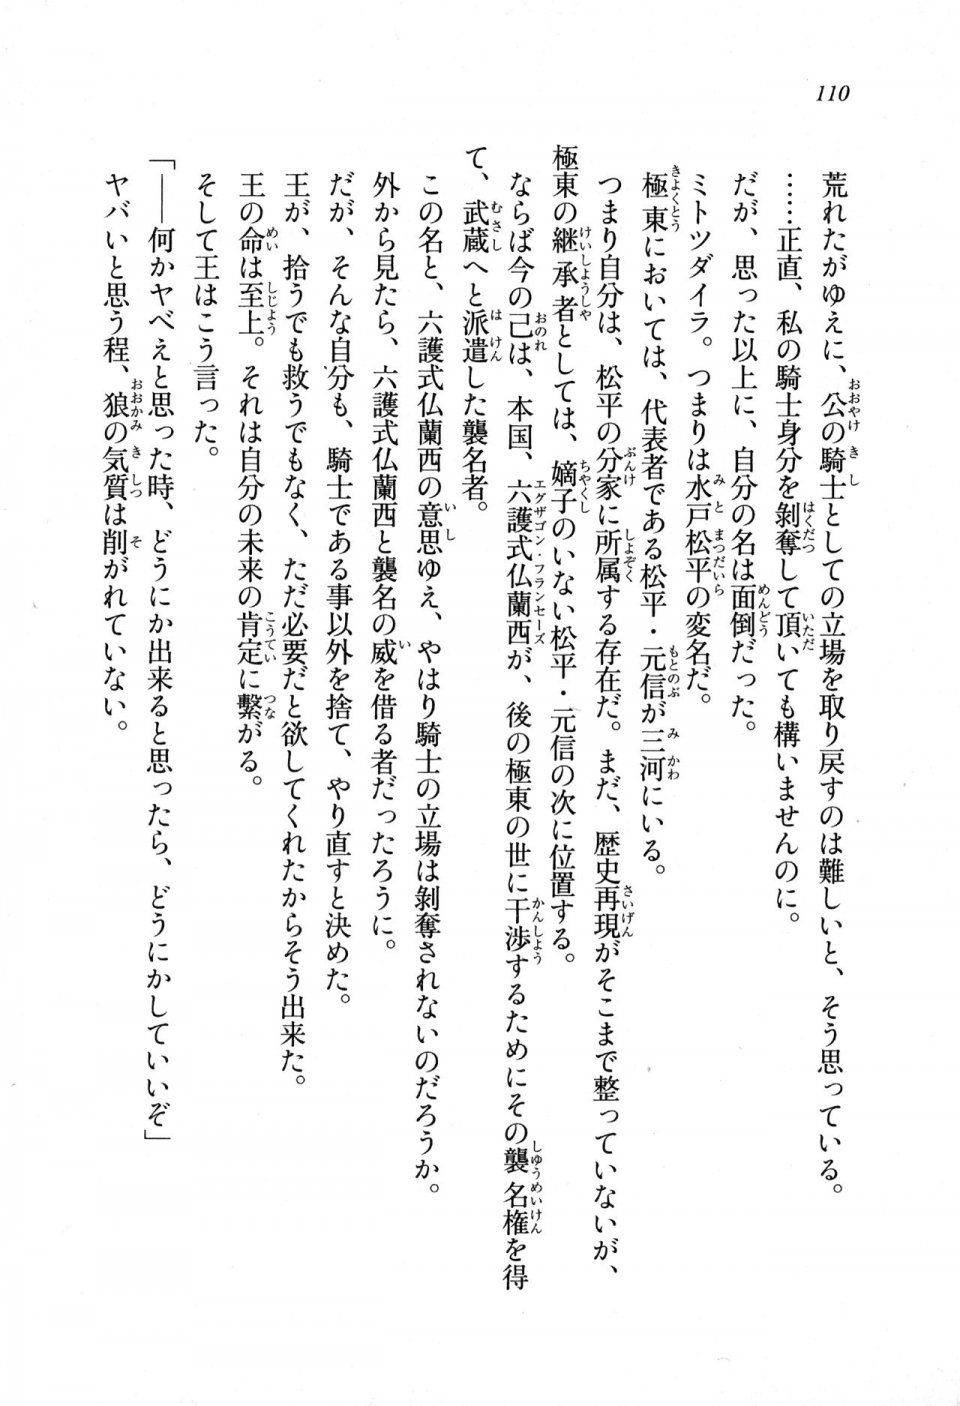 Kyoukai Senjou no Horizon LN Sidestory Vol 1 - Photo #108